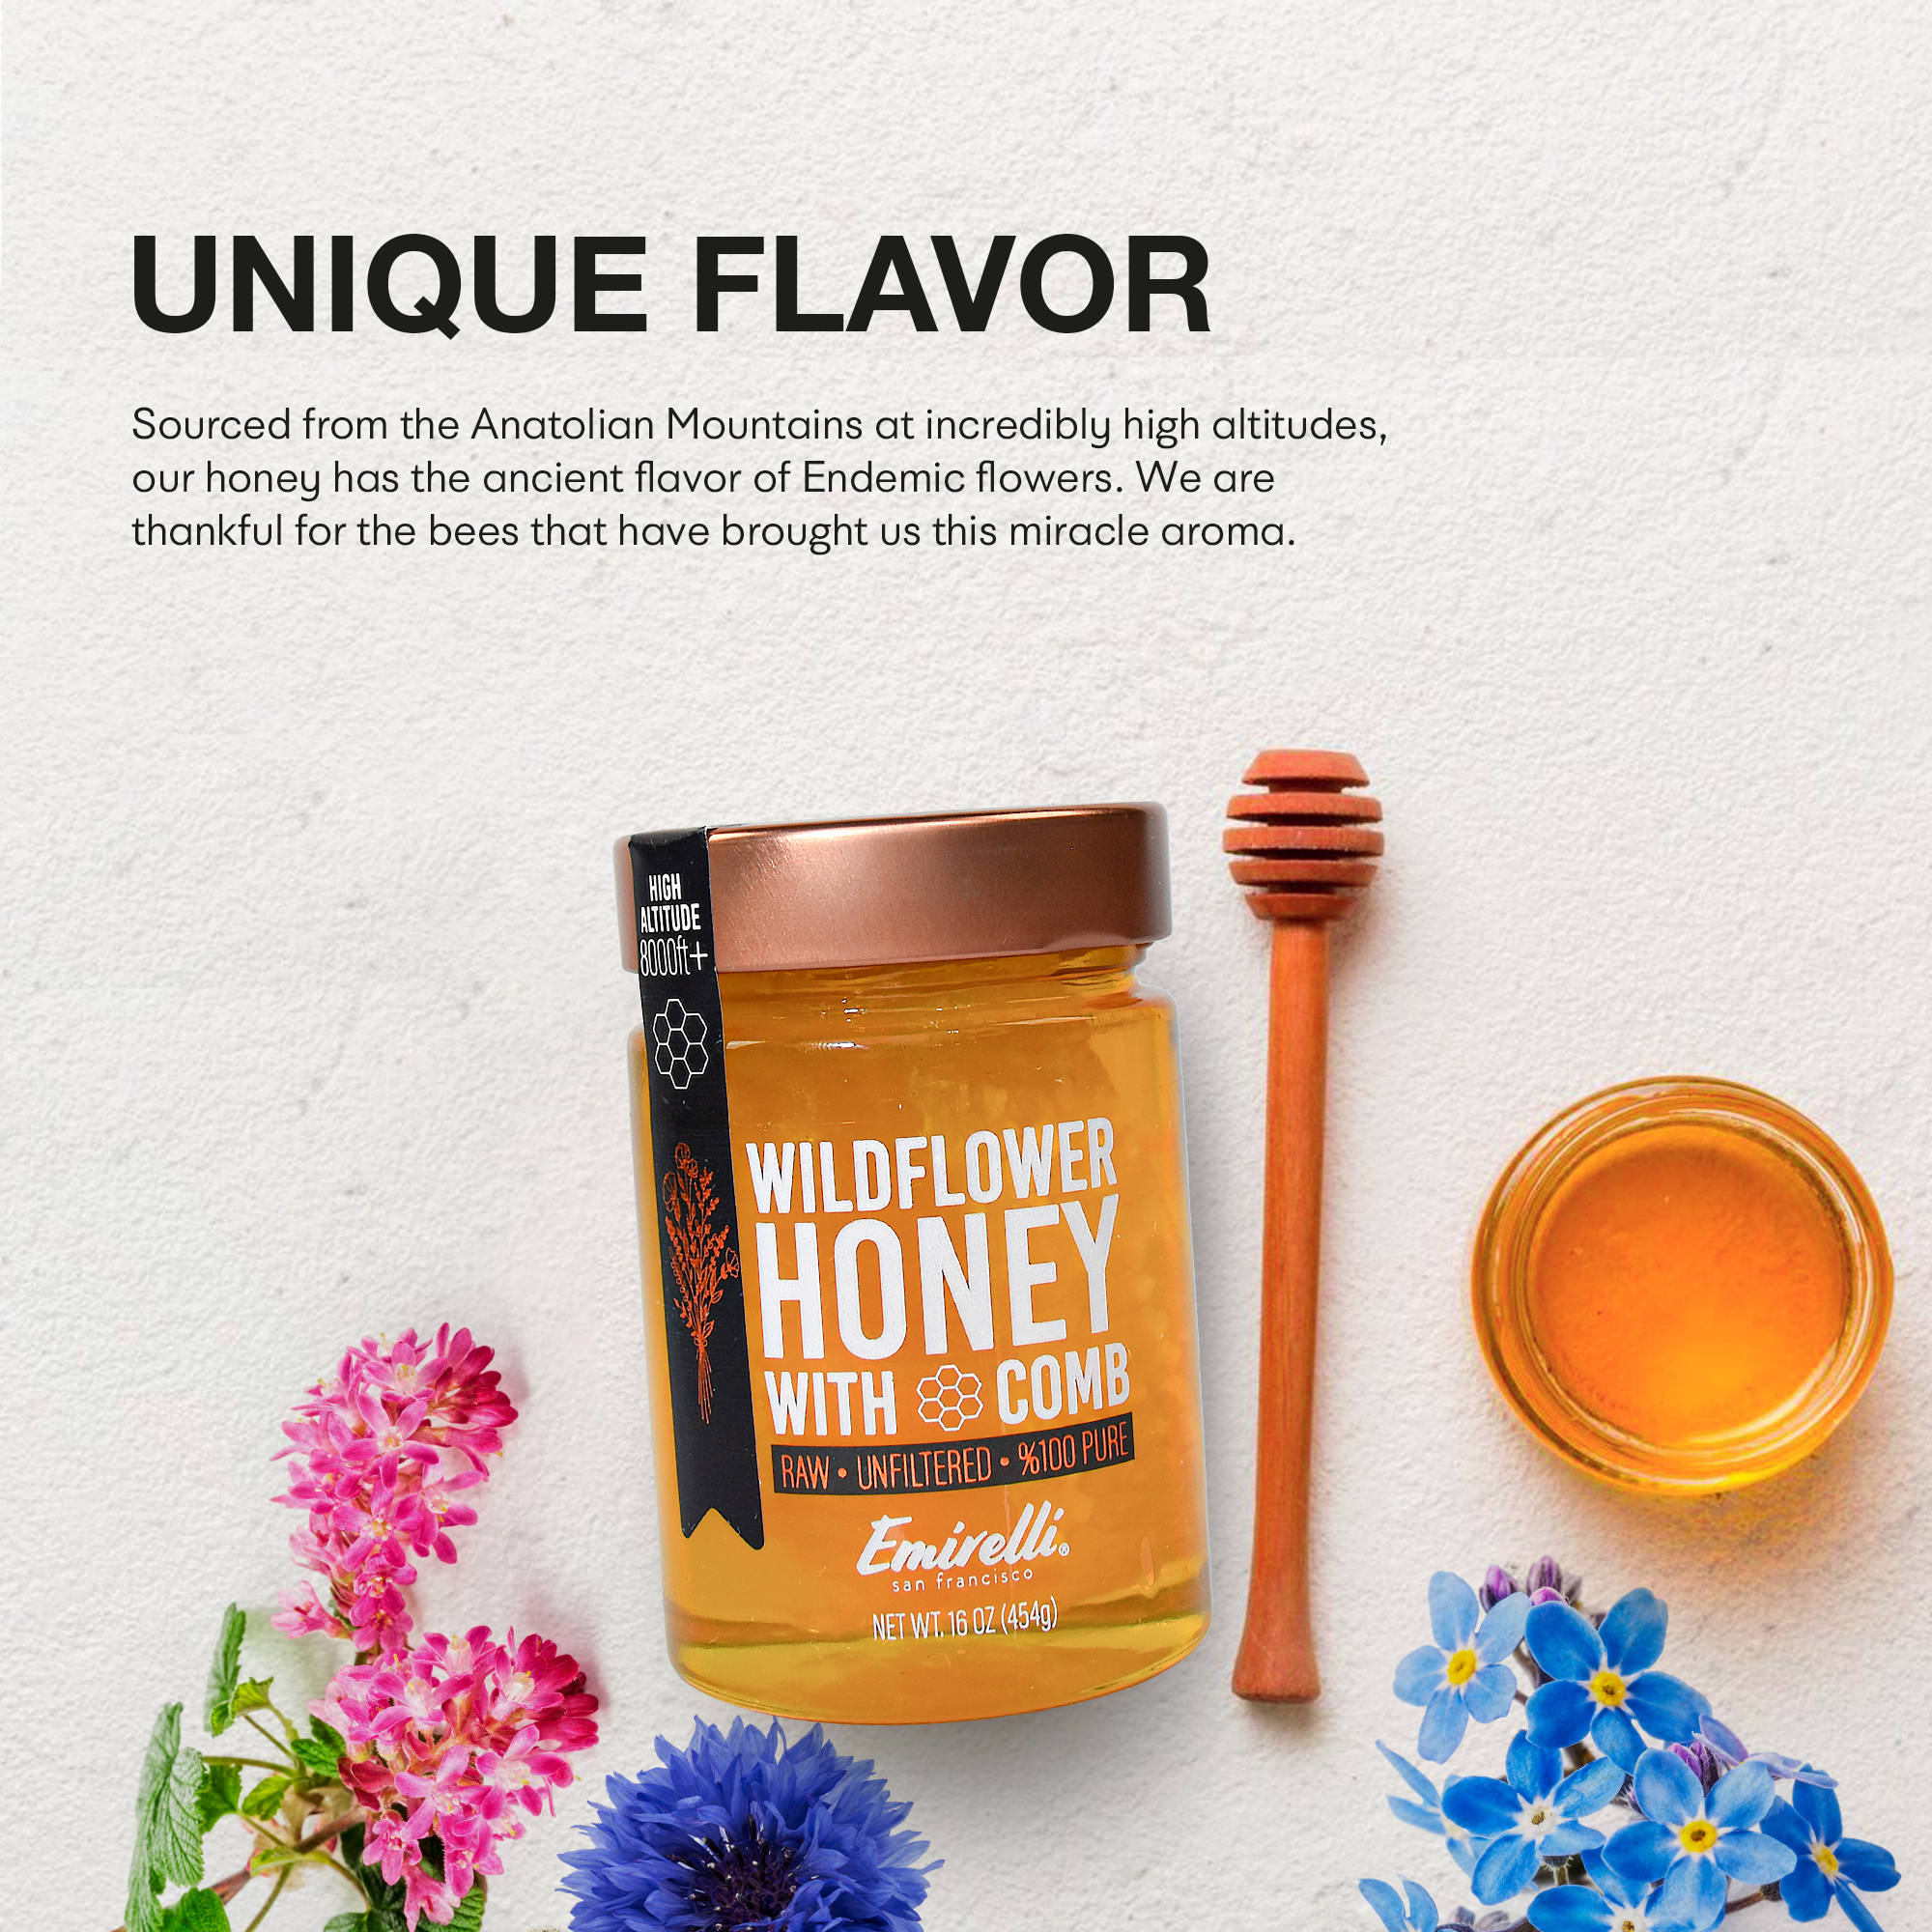 Emirelli Wildflower Honey with Comb